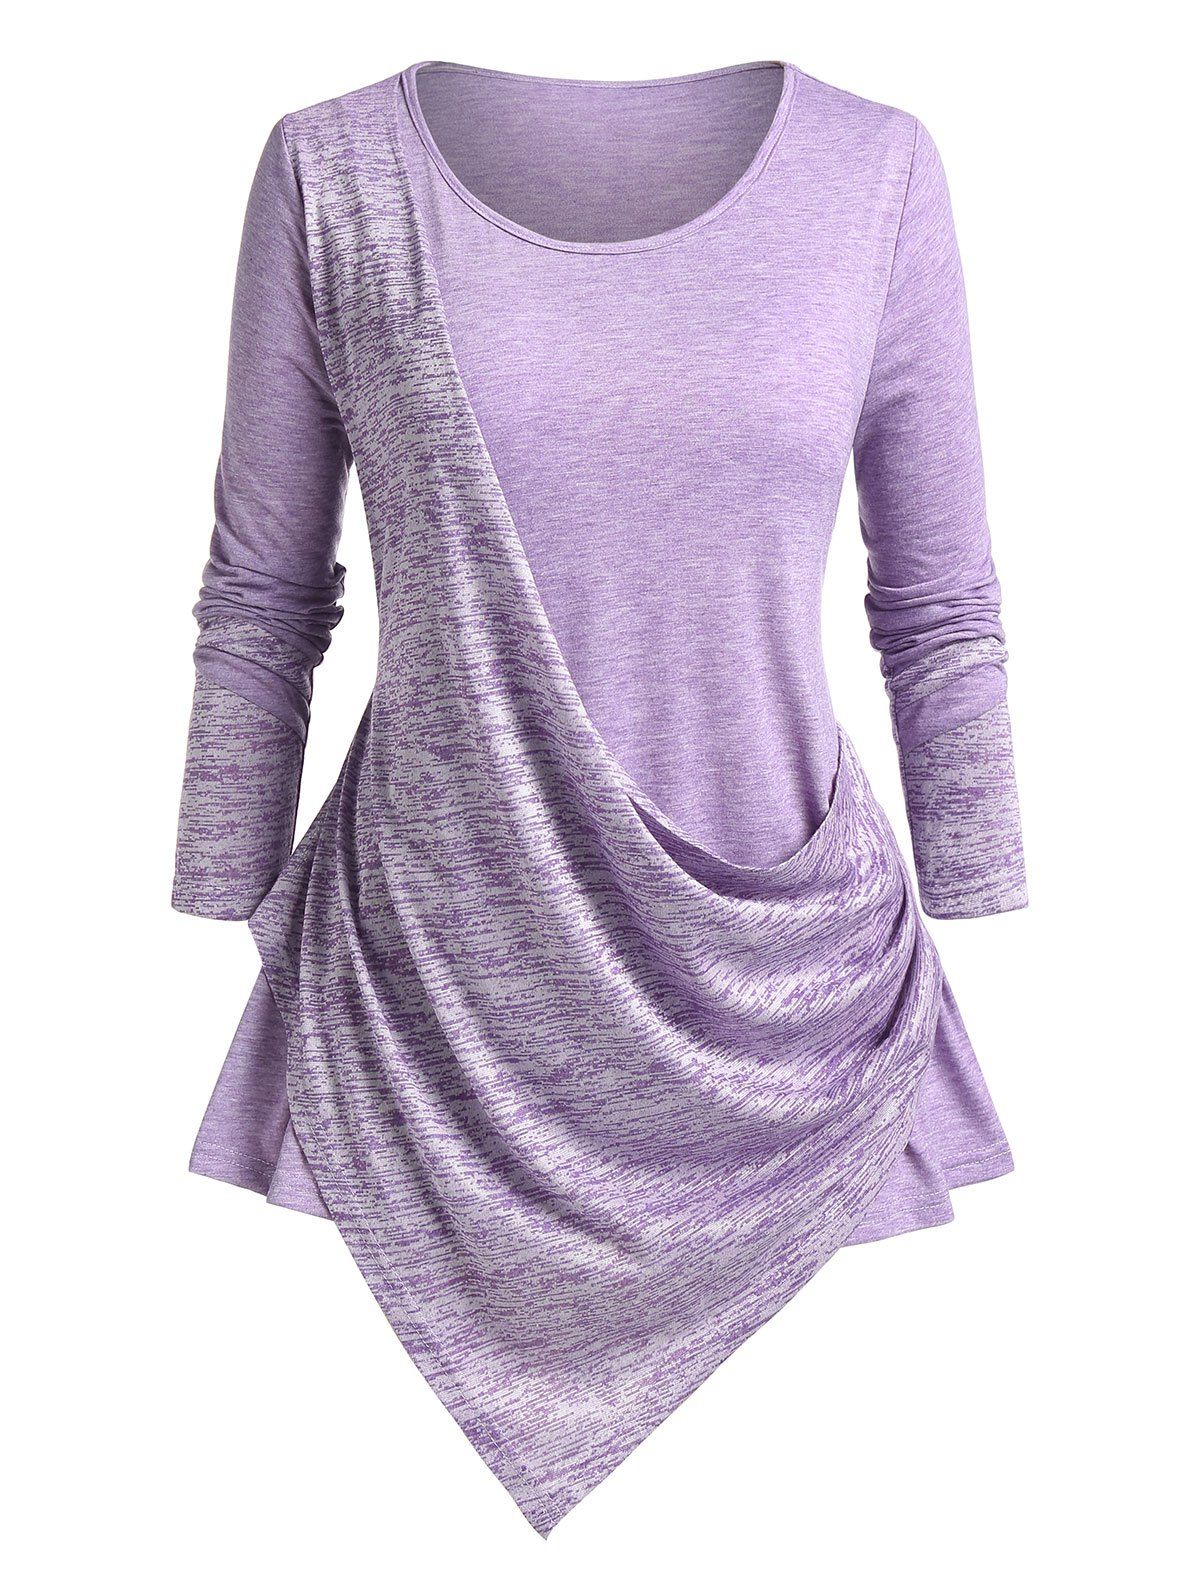 T-shirt Asymétrique Drapé Teinté Grande Taille - Violet clair 5X